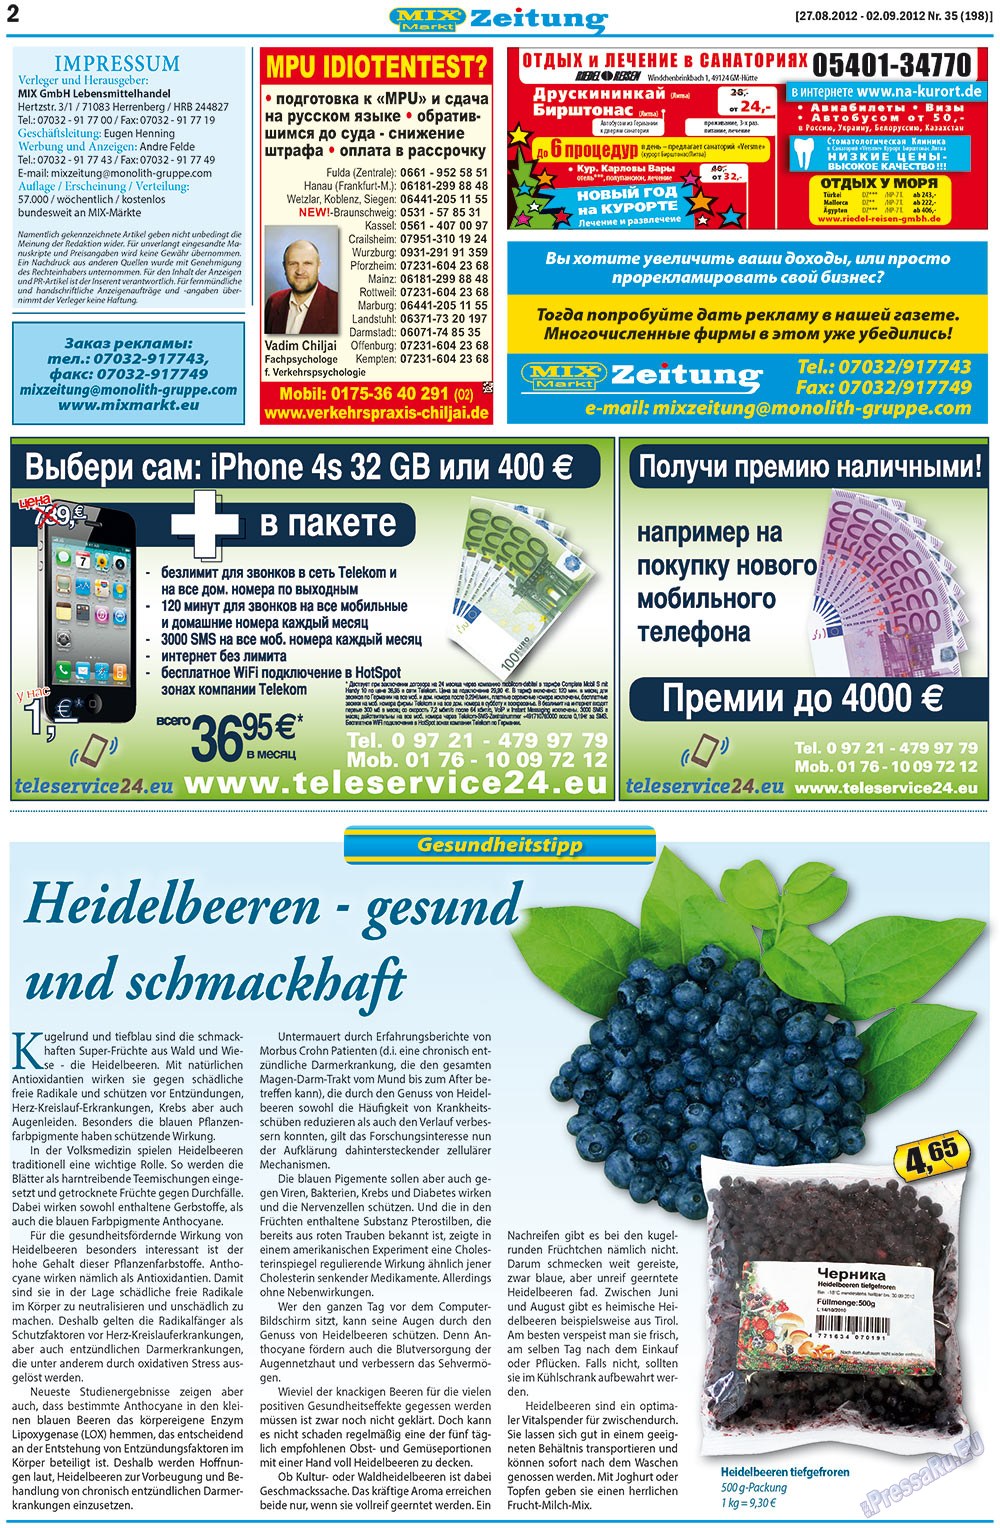 MIX-Markt Zeitung (газета). 2012 год, номер 35, стр. 2